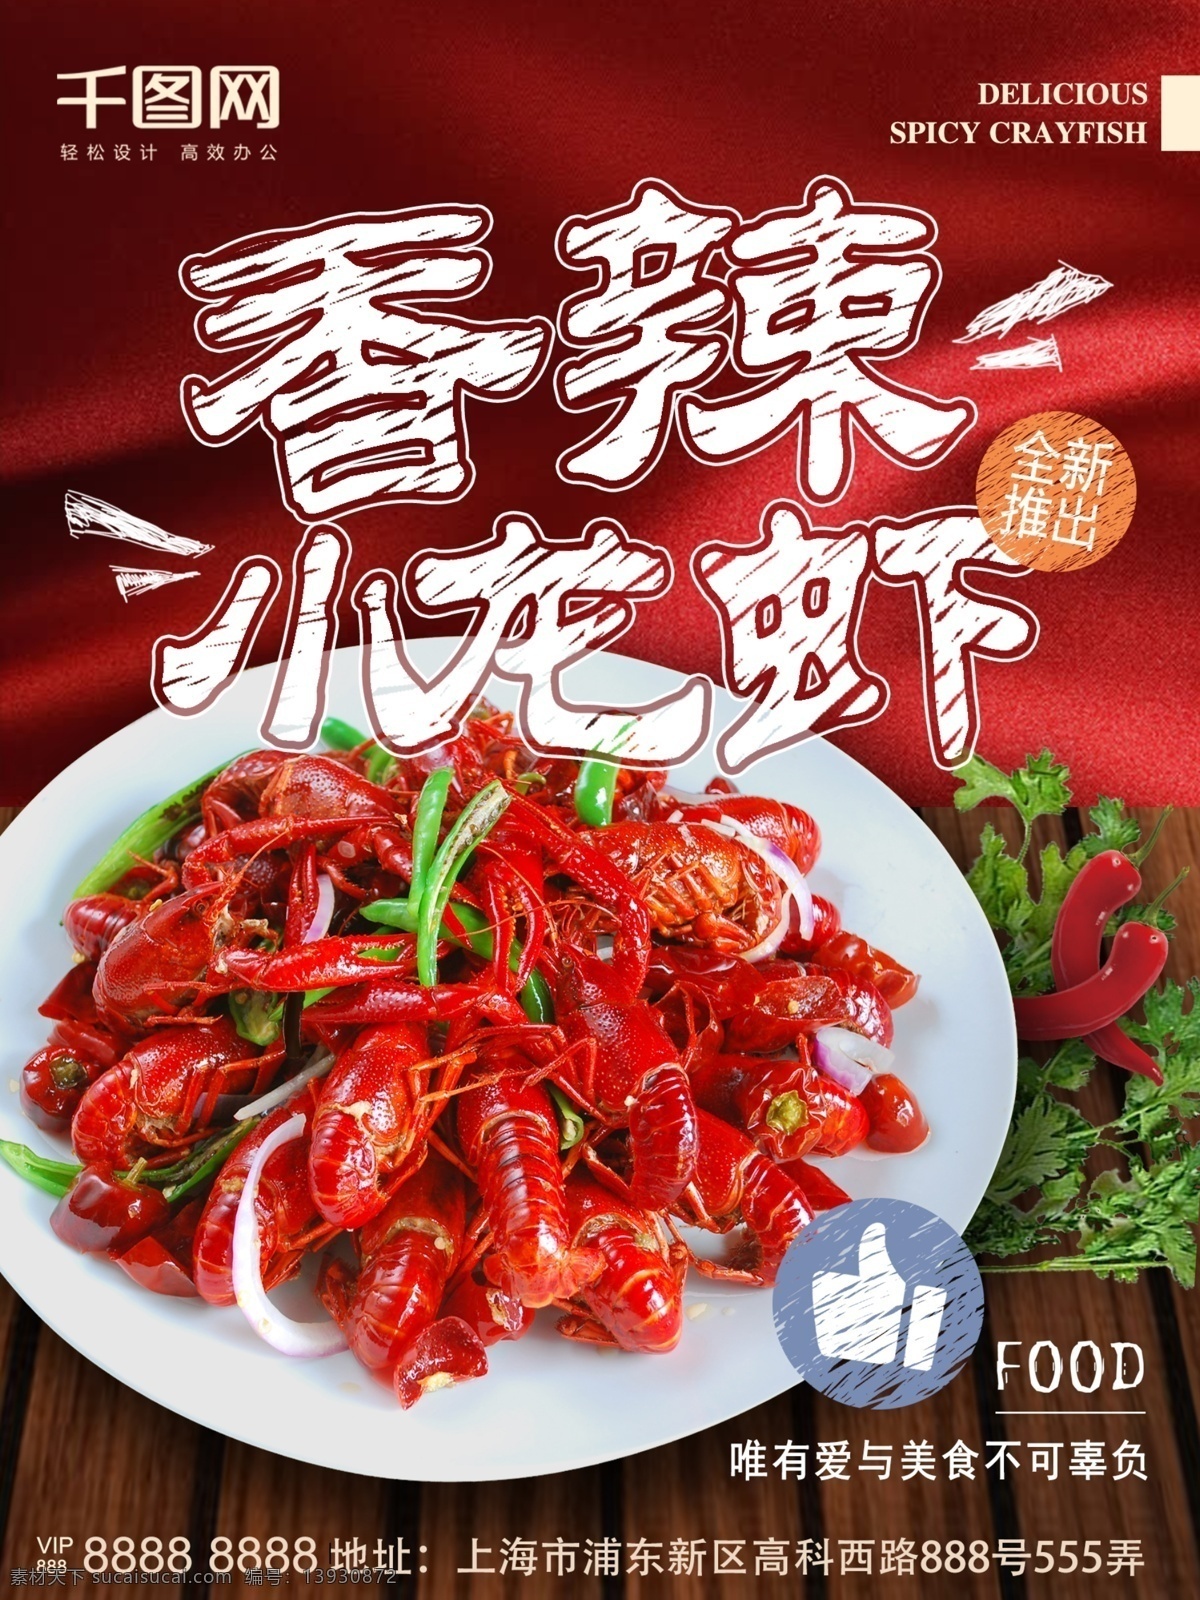 香辣 小 龙虾 海报 红色 新鲜 美食 粉笔 新品上市 小龙虾 诱人 粉笔风格